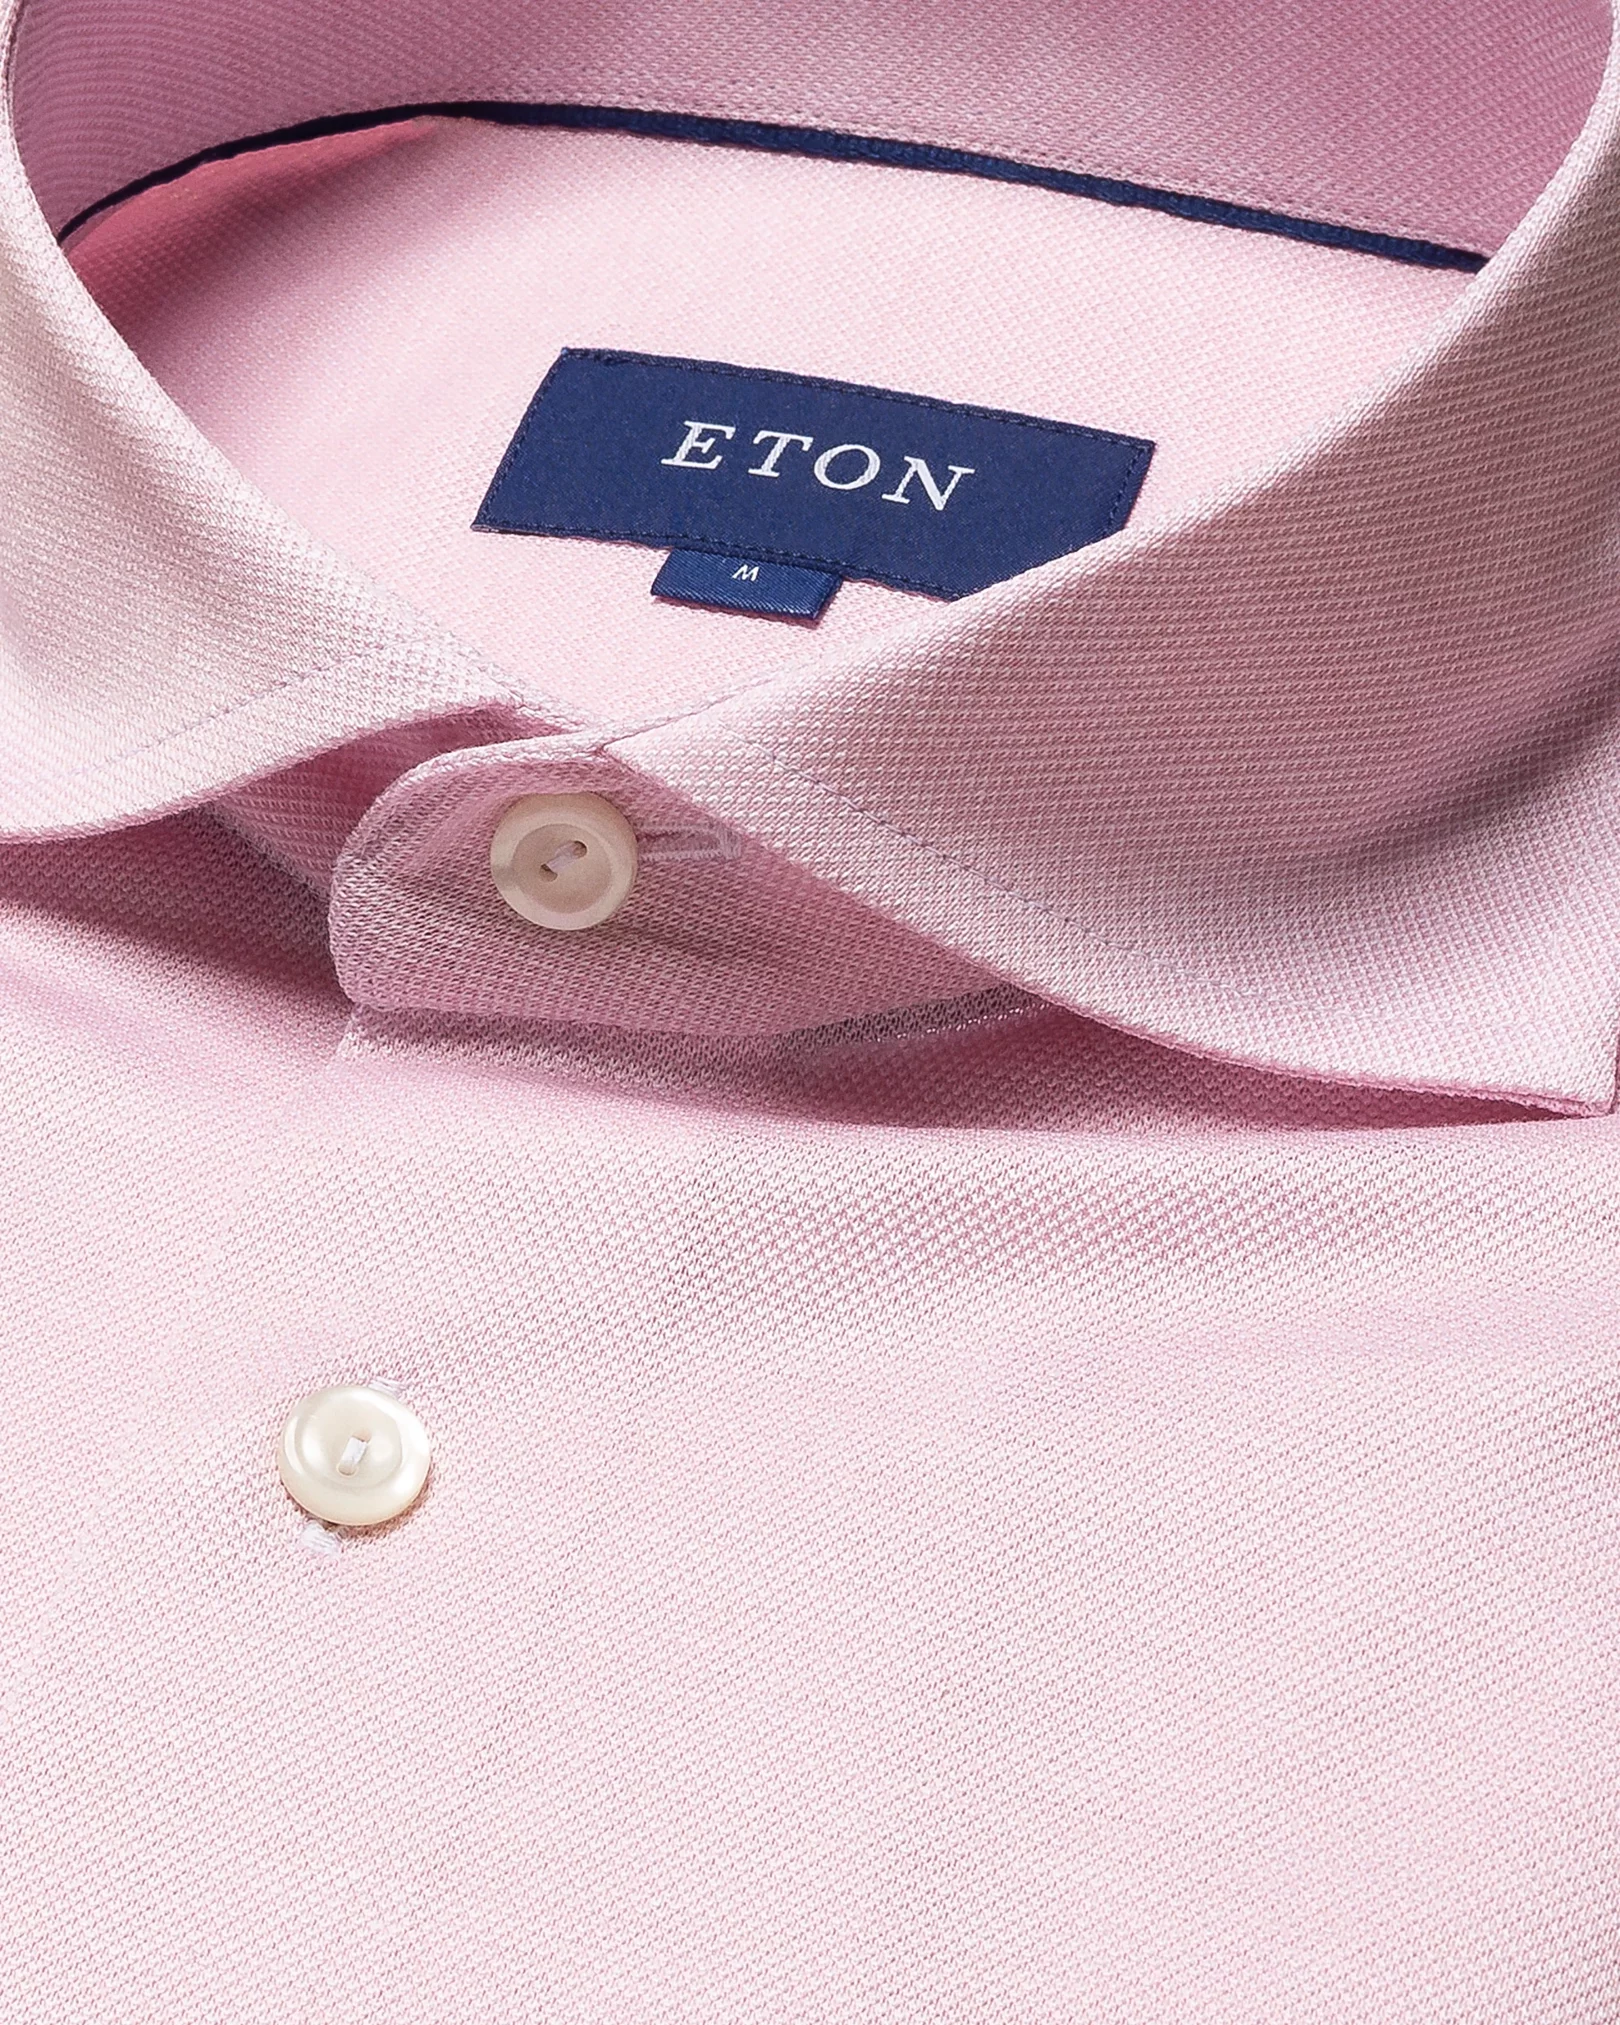 Eton - pink jersey